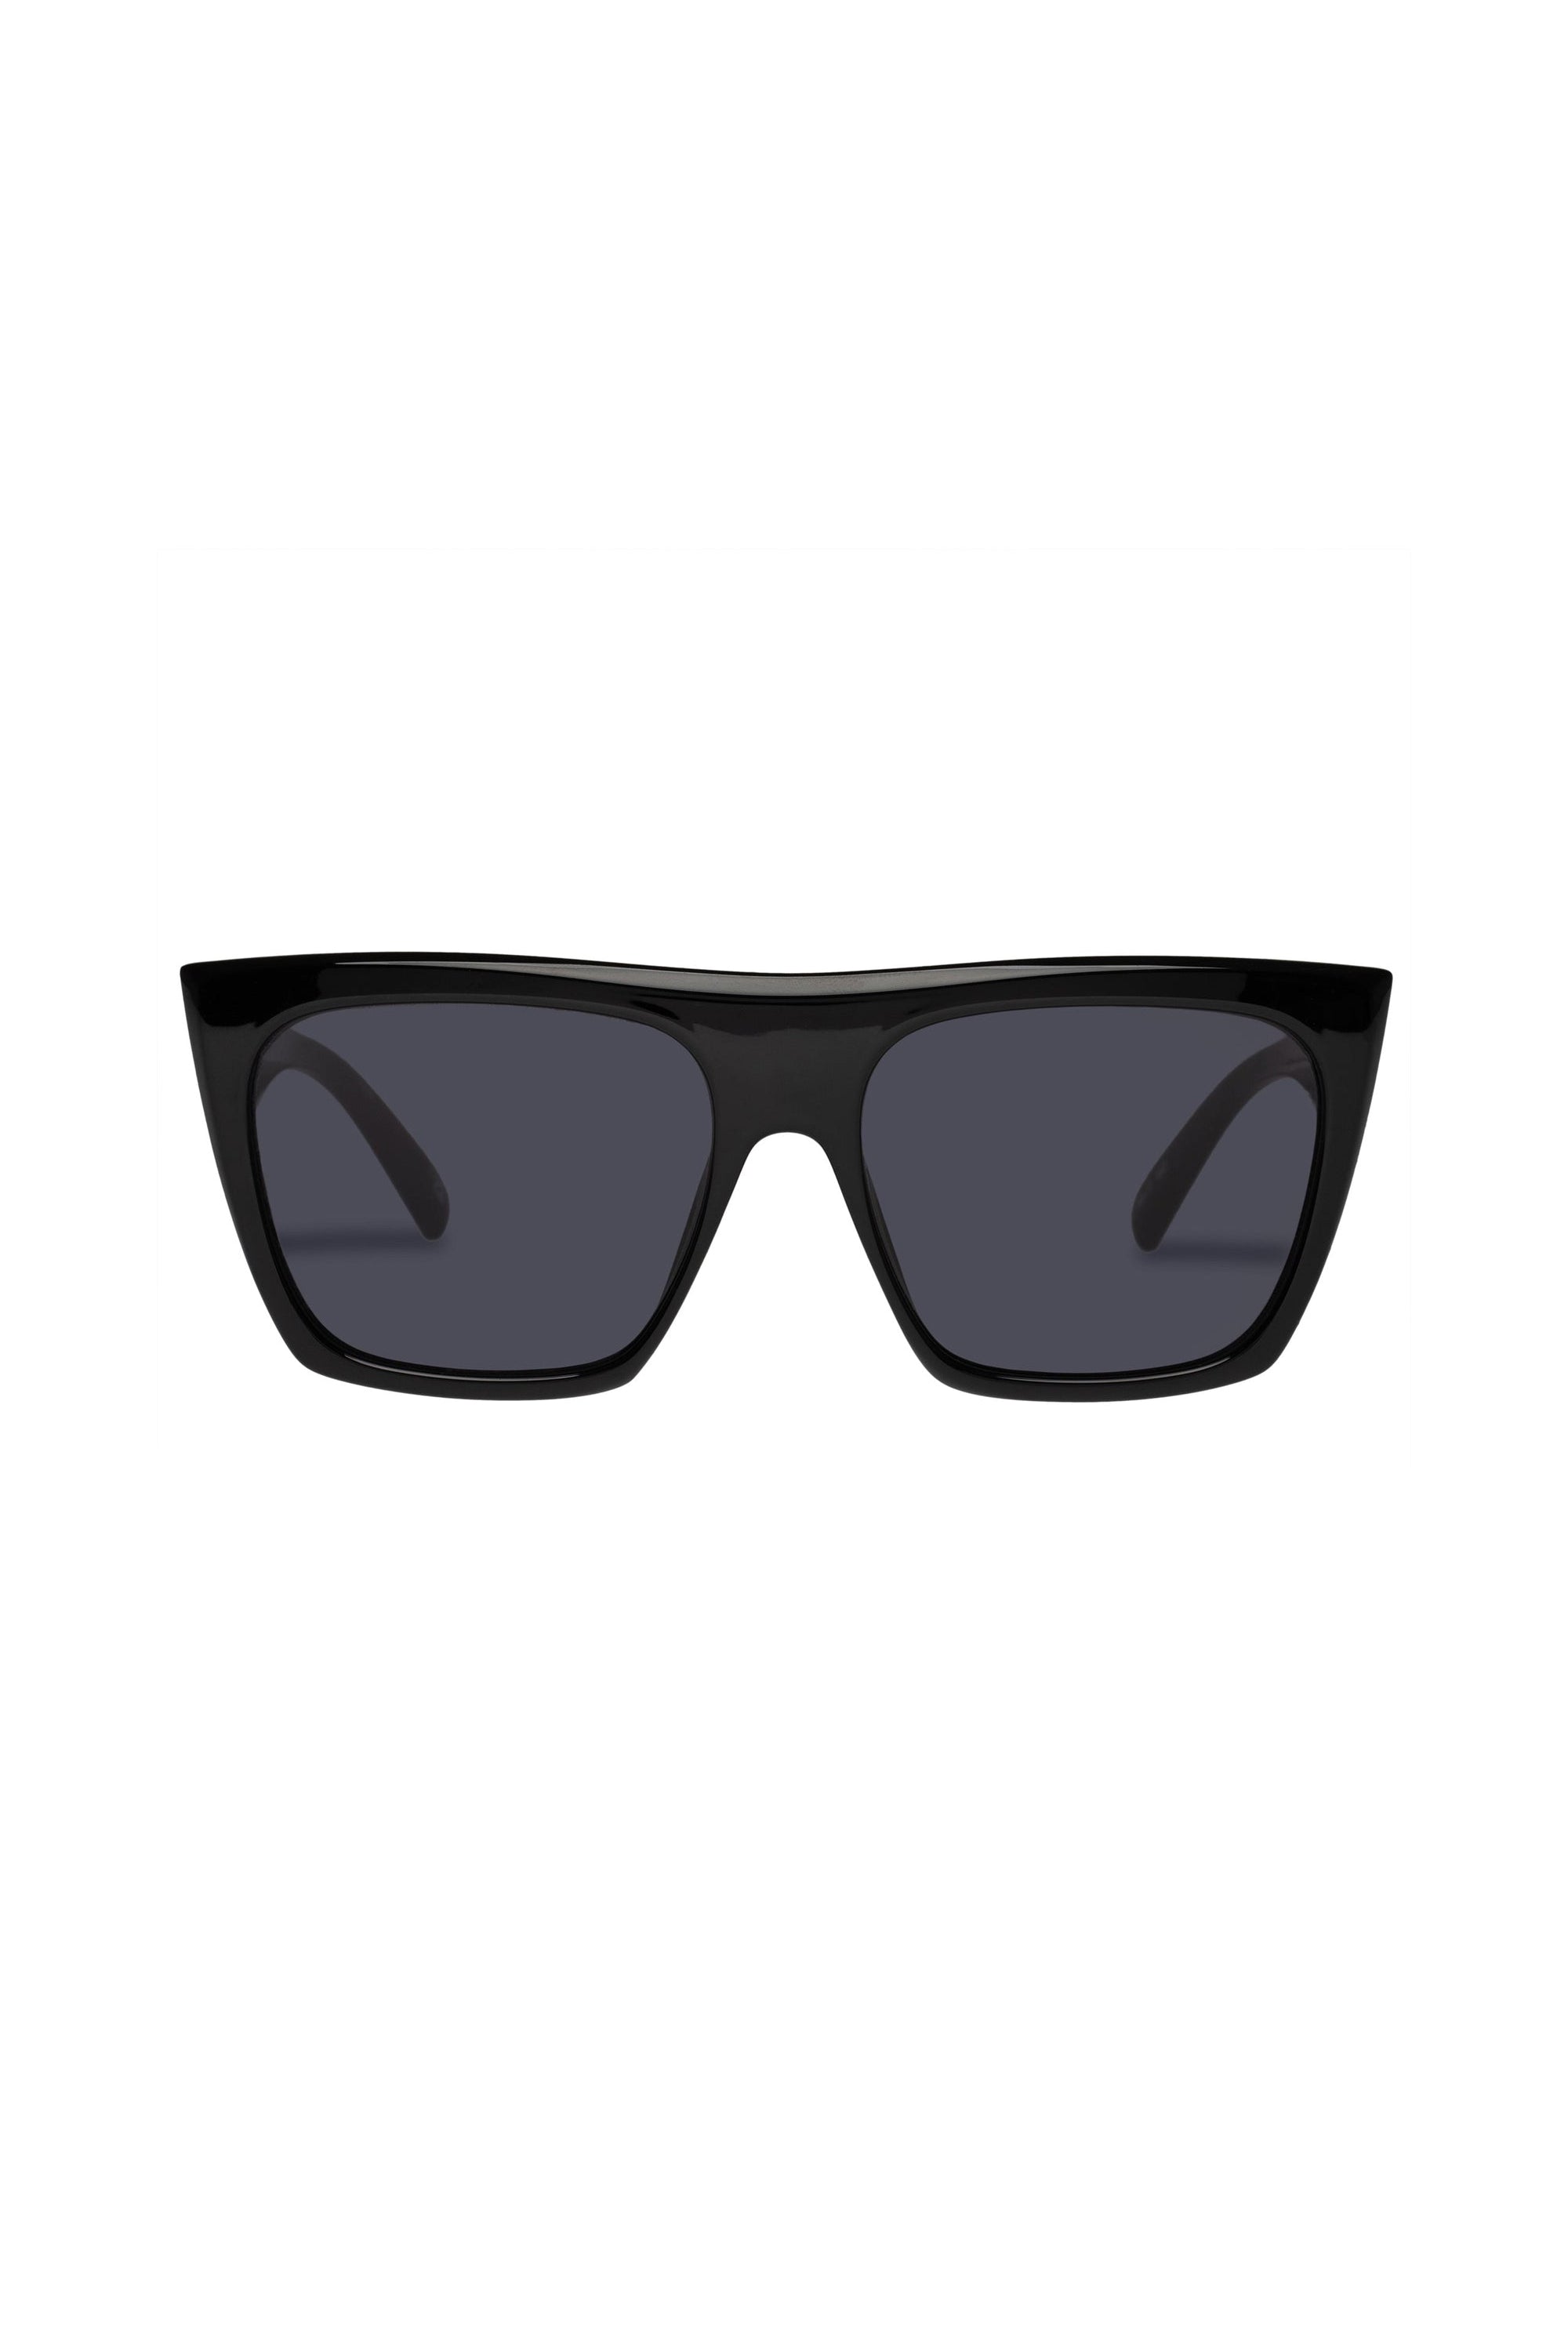 Le Specs The Thirst Sunglasses - Black - RUM Amsterdam